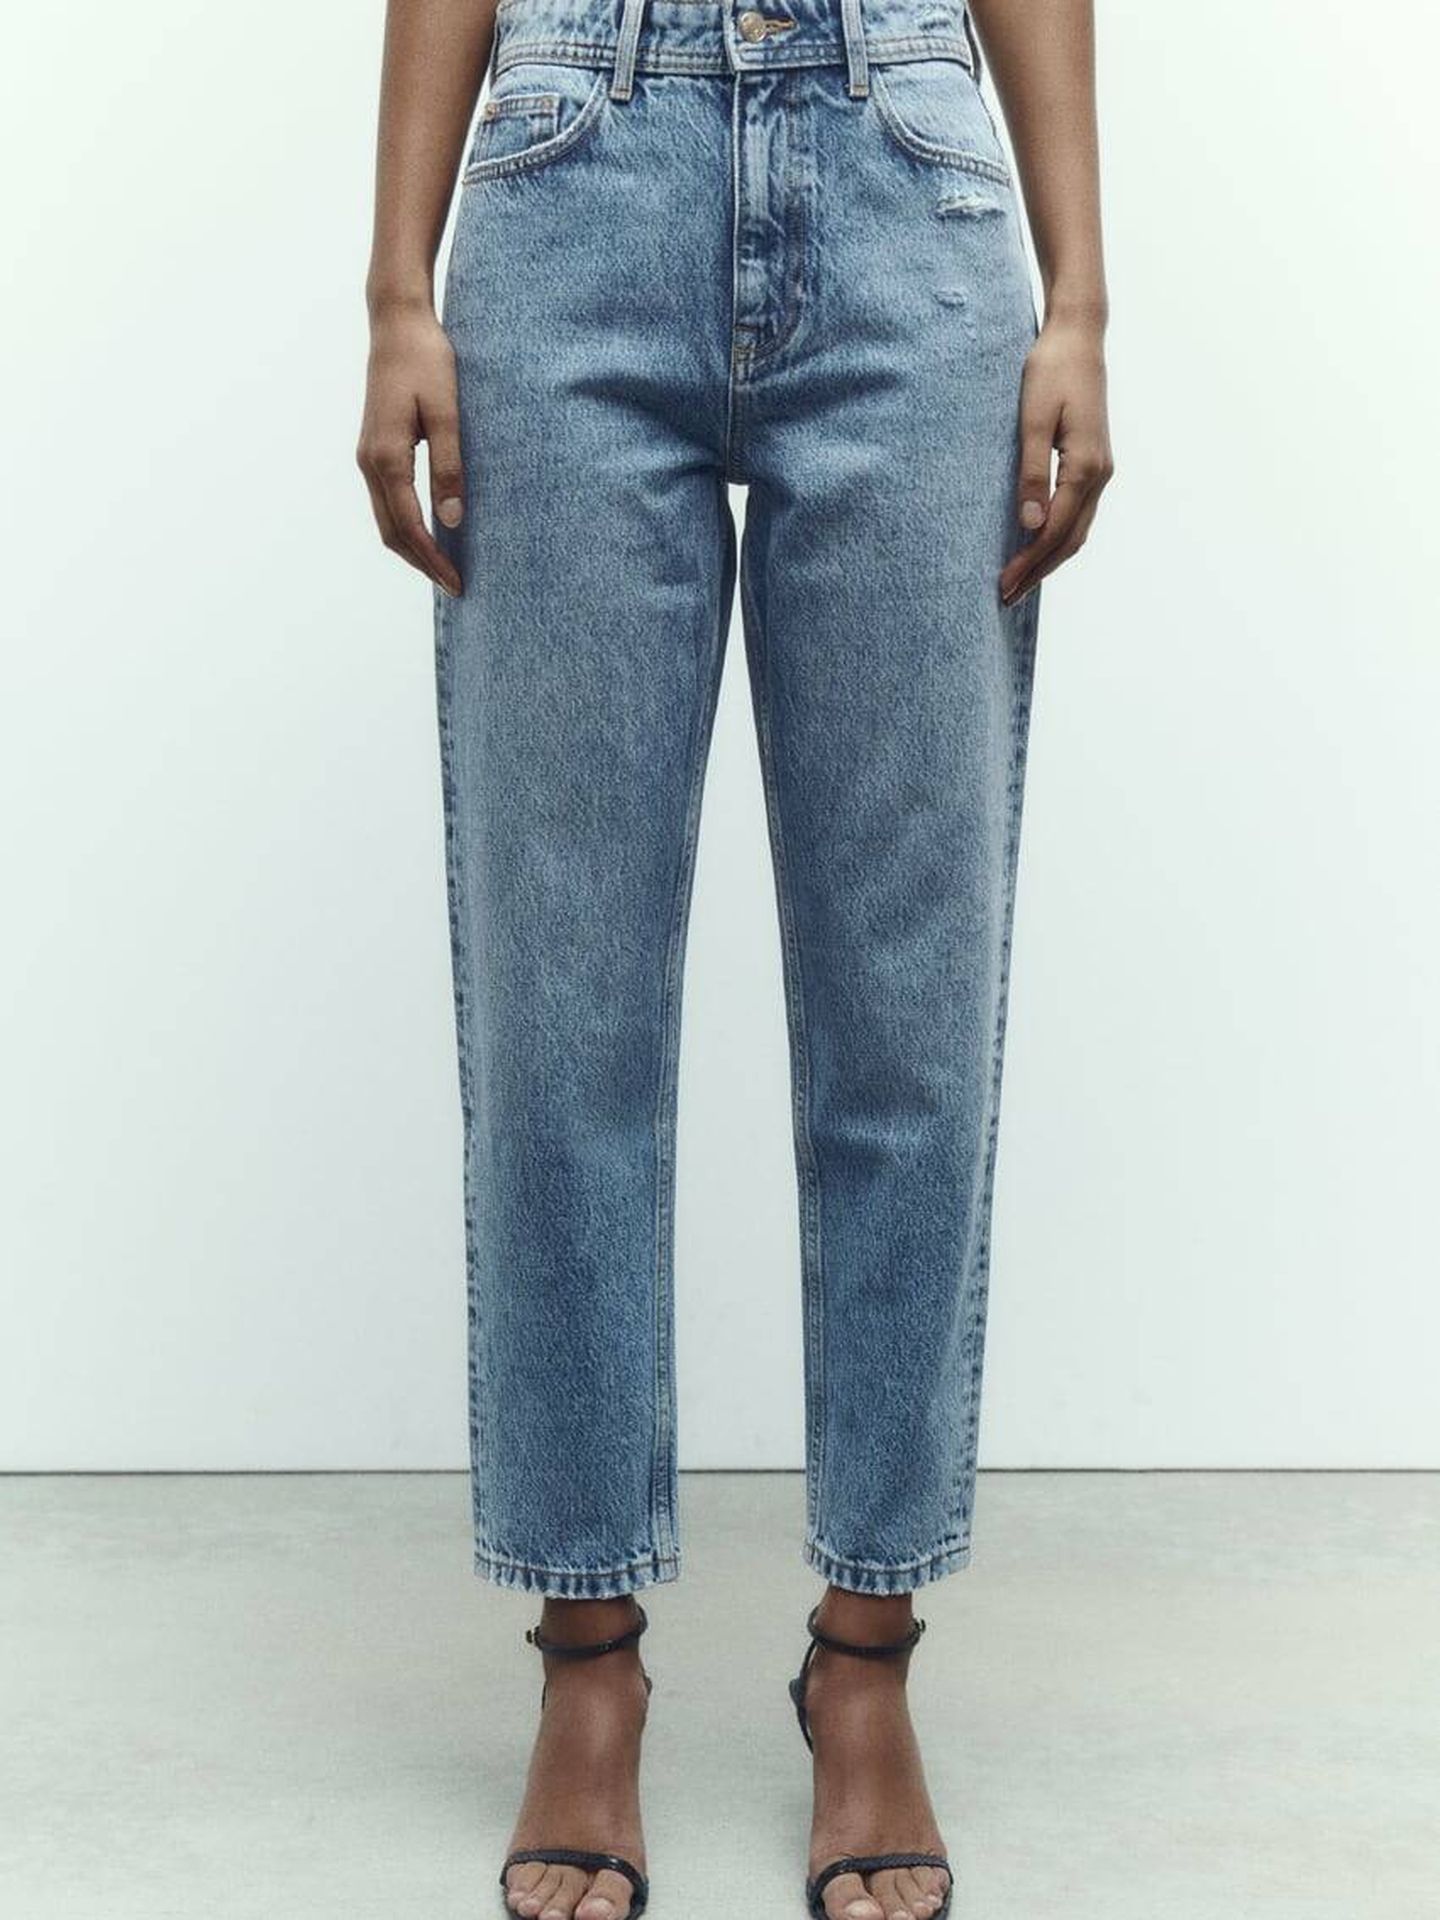 Jeans Zara para combinar con esta blusa bohemia. (Zara)